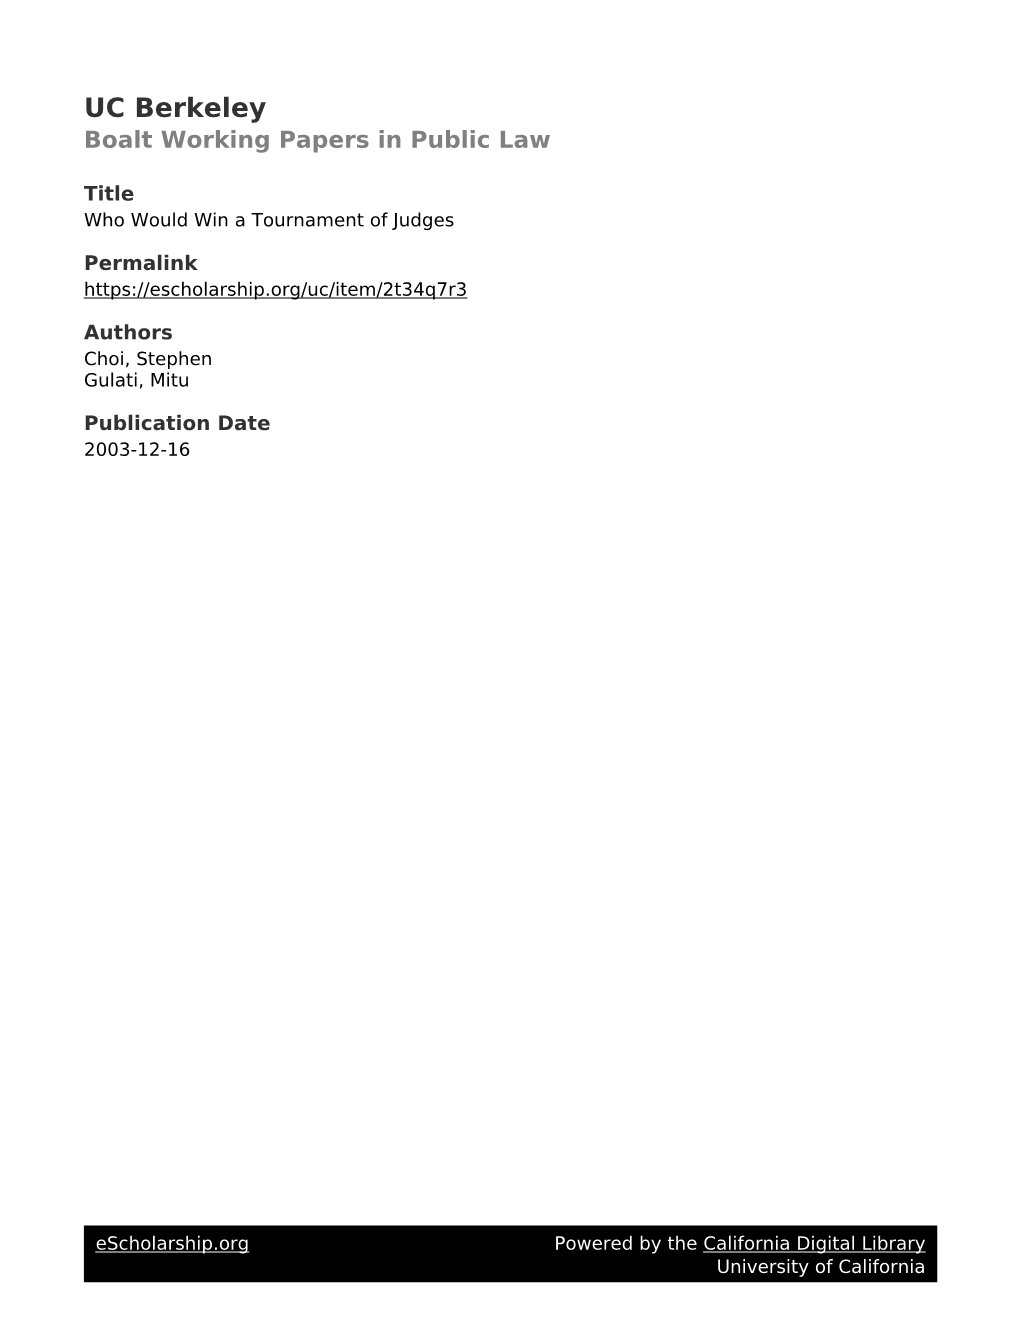 UC Berkeley Boalt Working Papers in Public Law